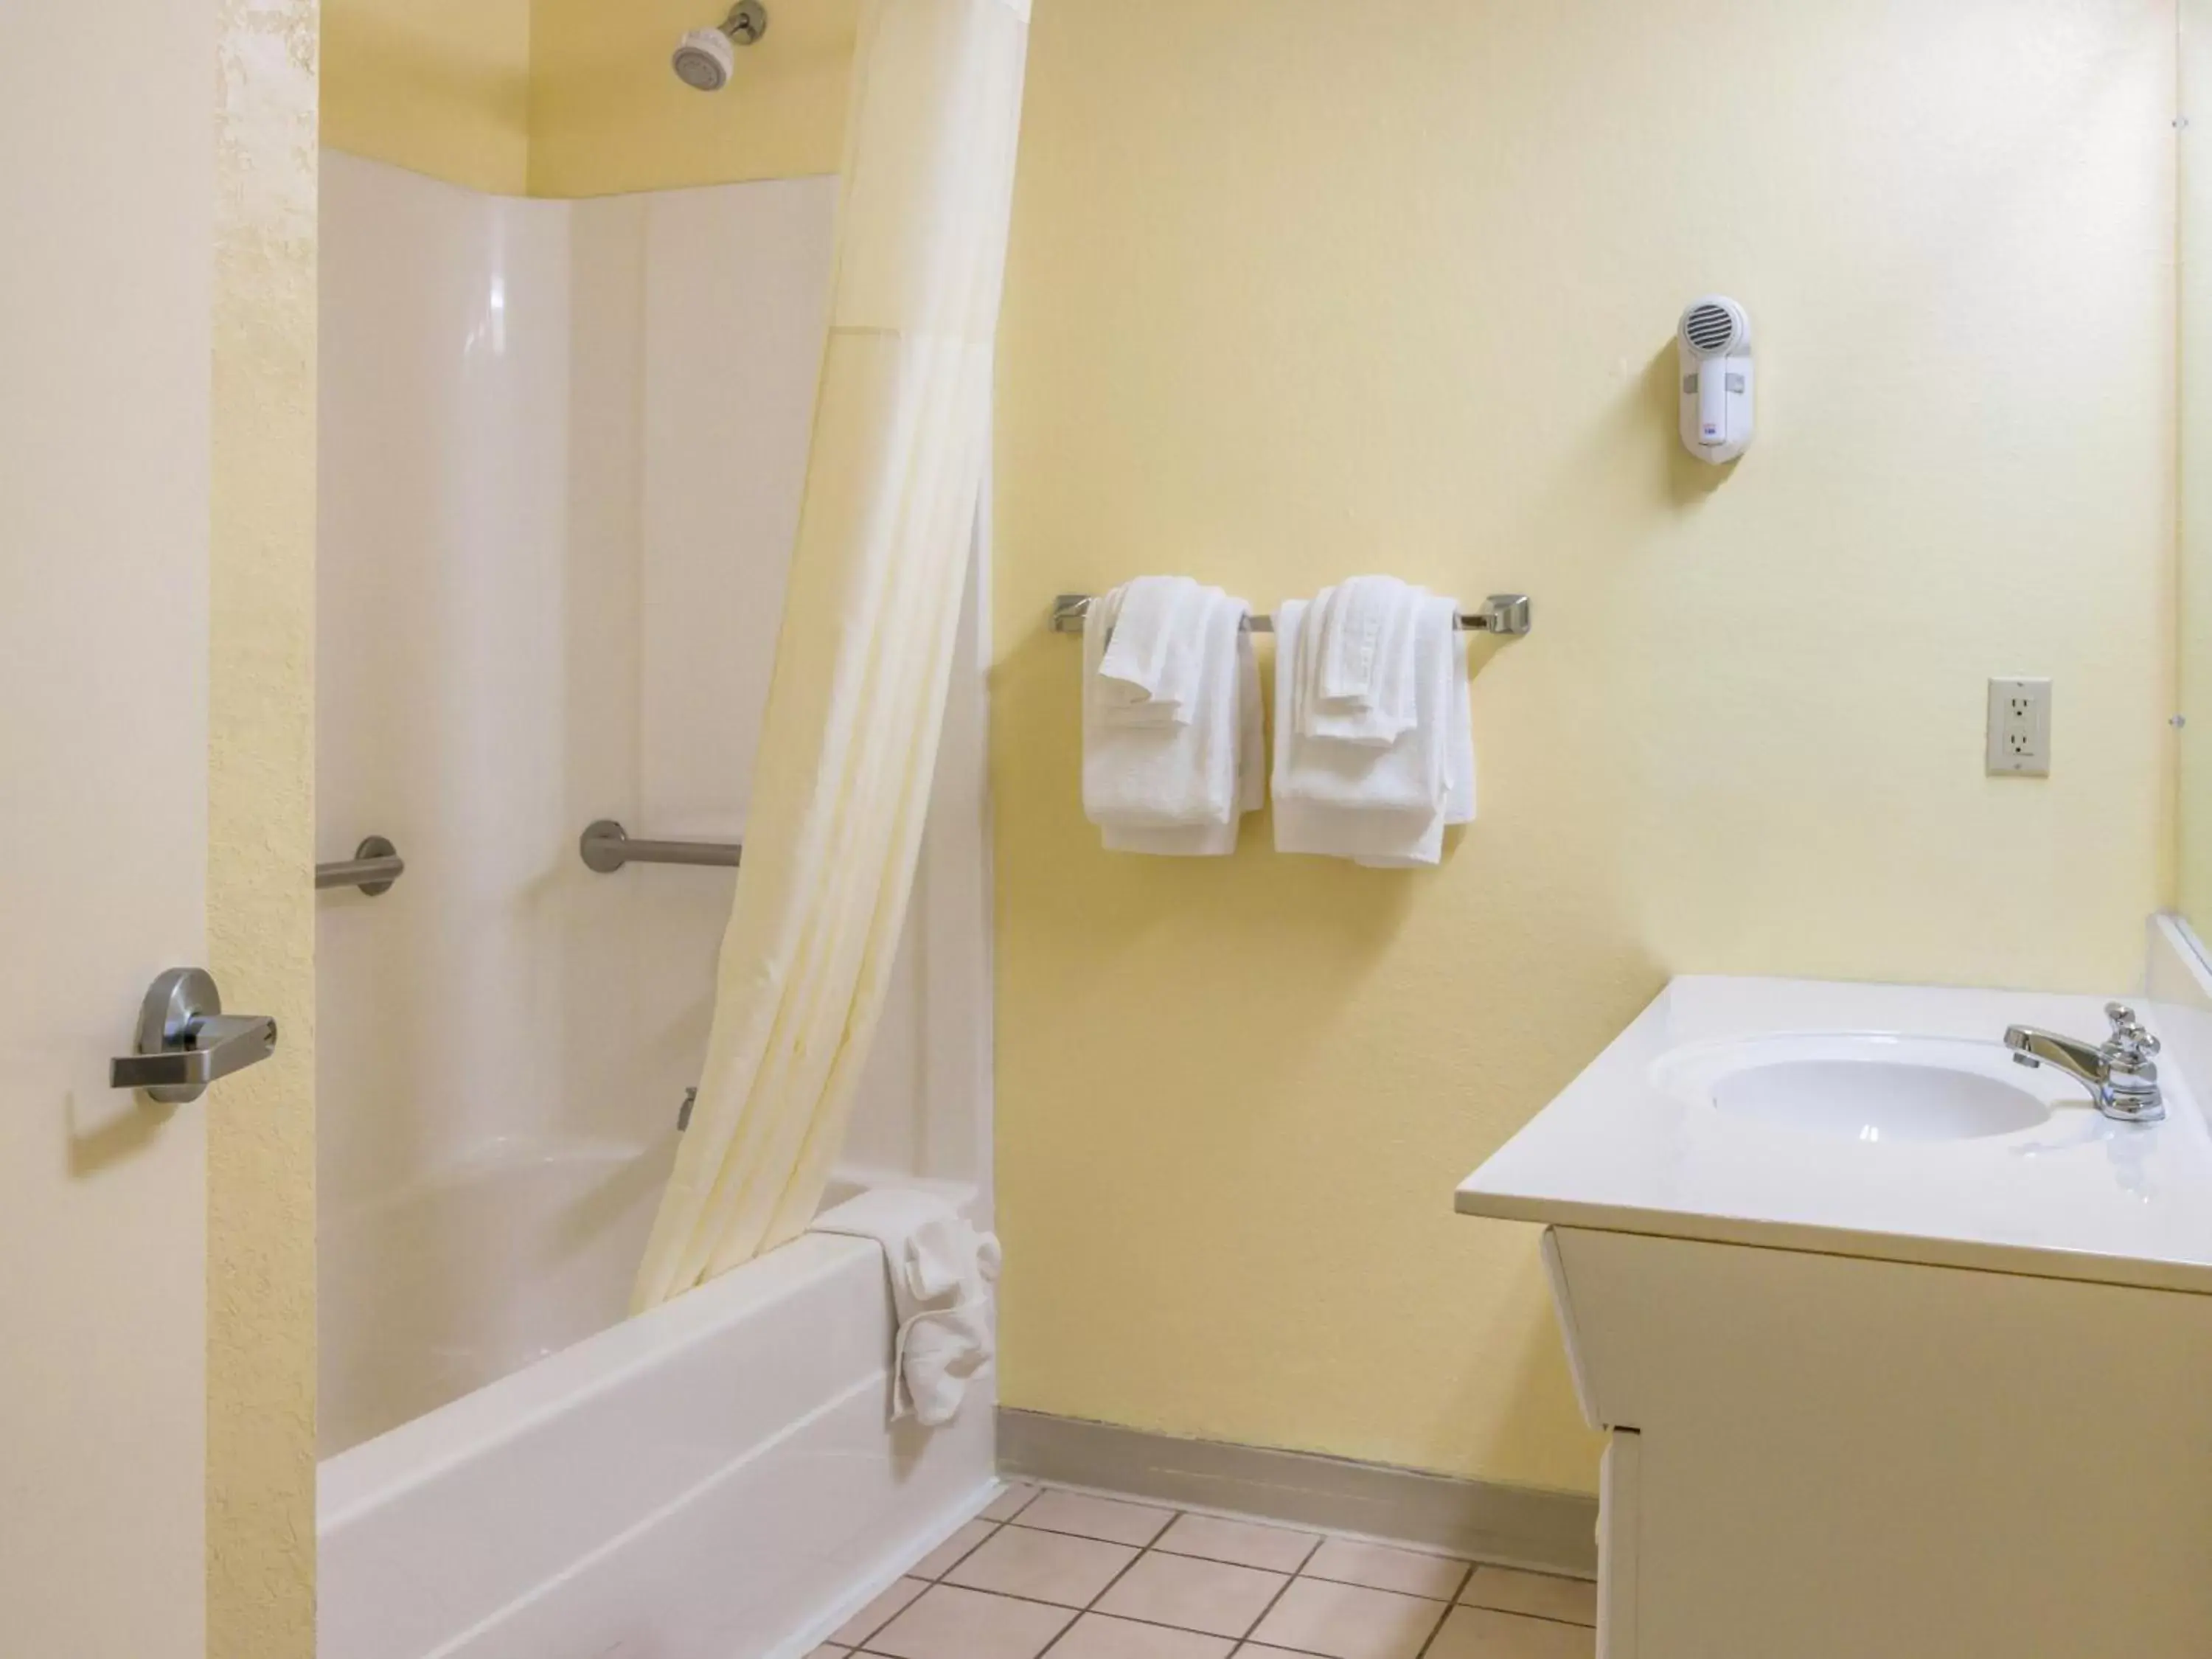 Bathroom in Americas Best Value Inn - Clayton